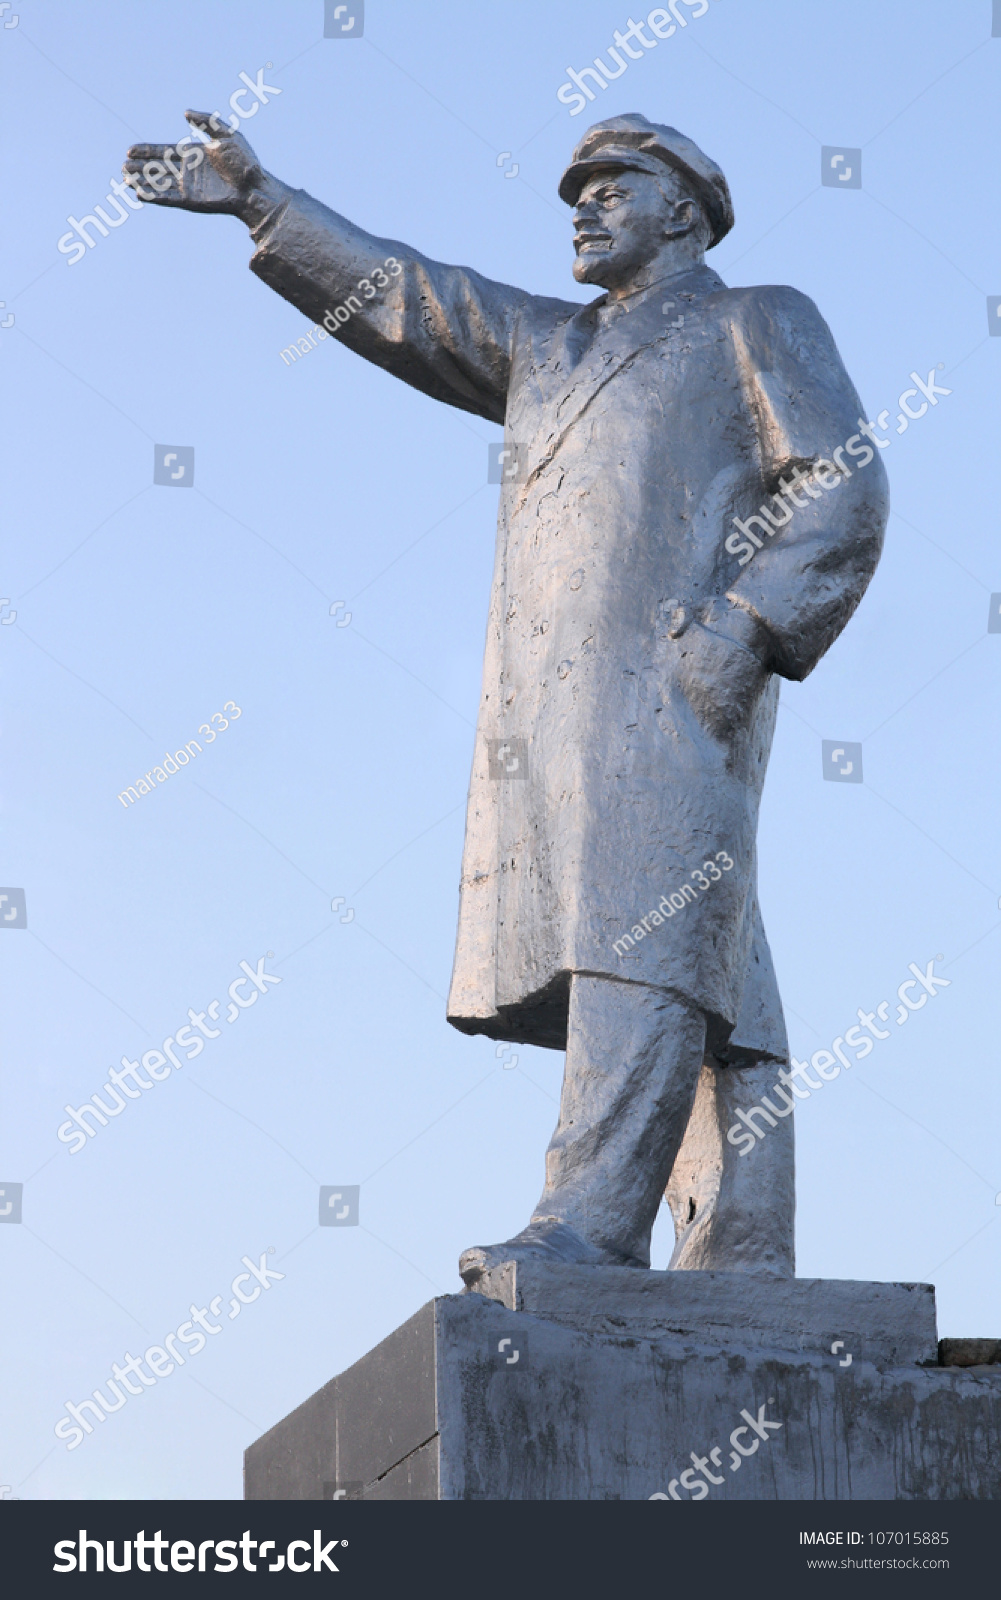 Памятник Ленину с кепкой в руке